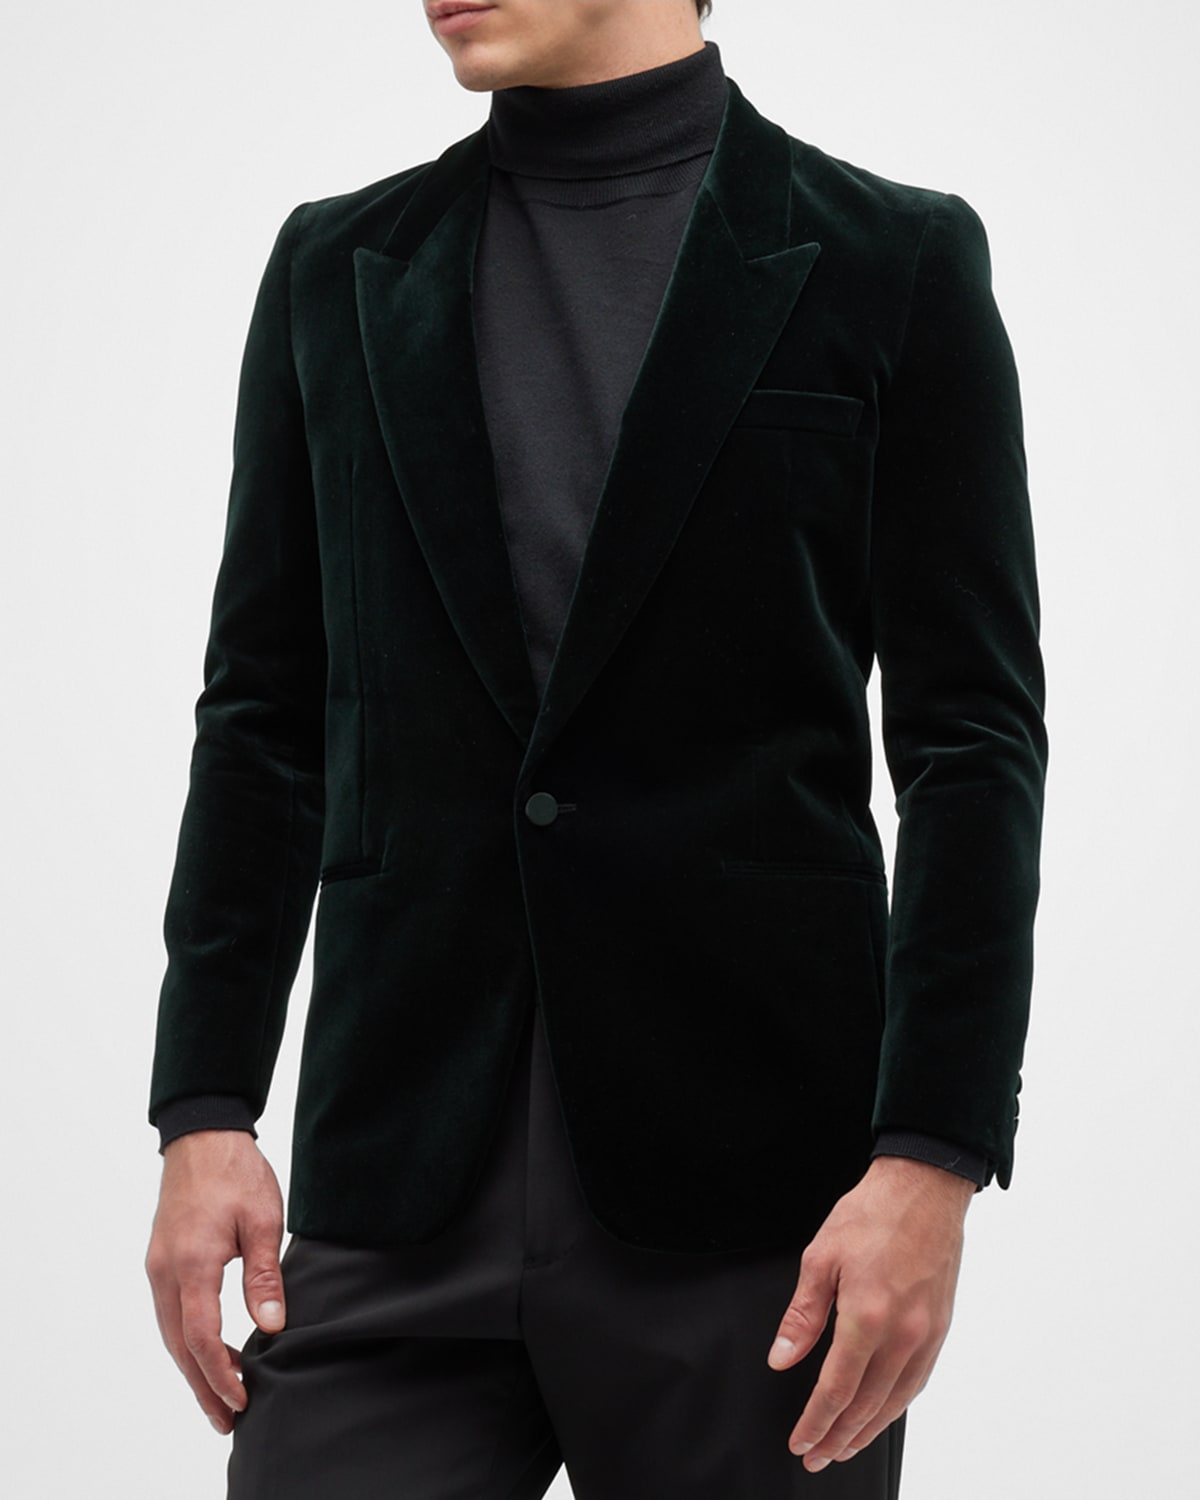 Men's Velvet Tuxedo Jacket